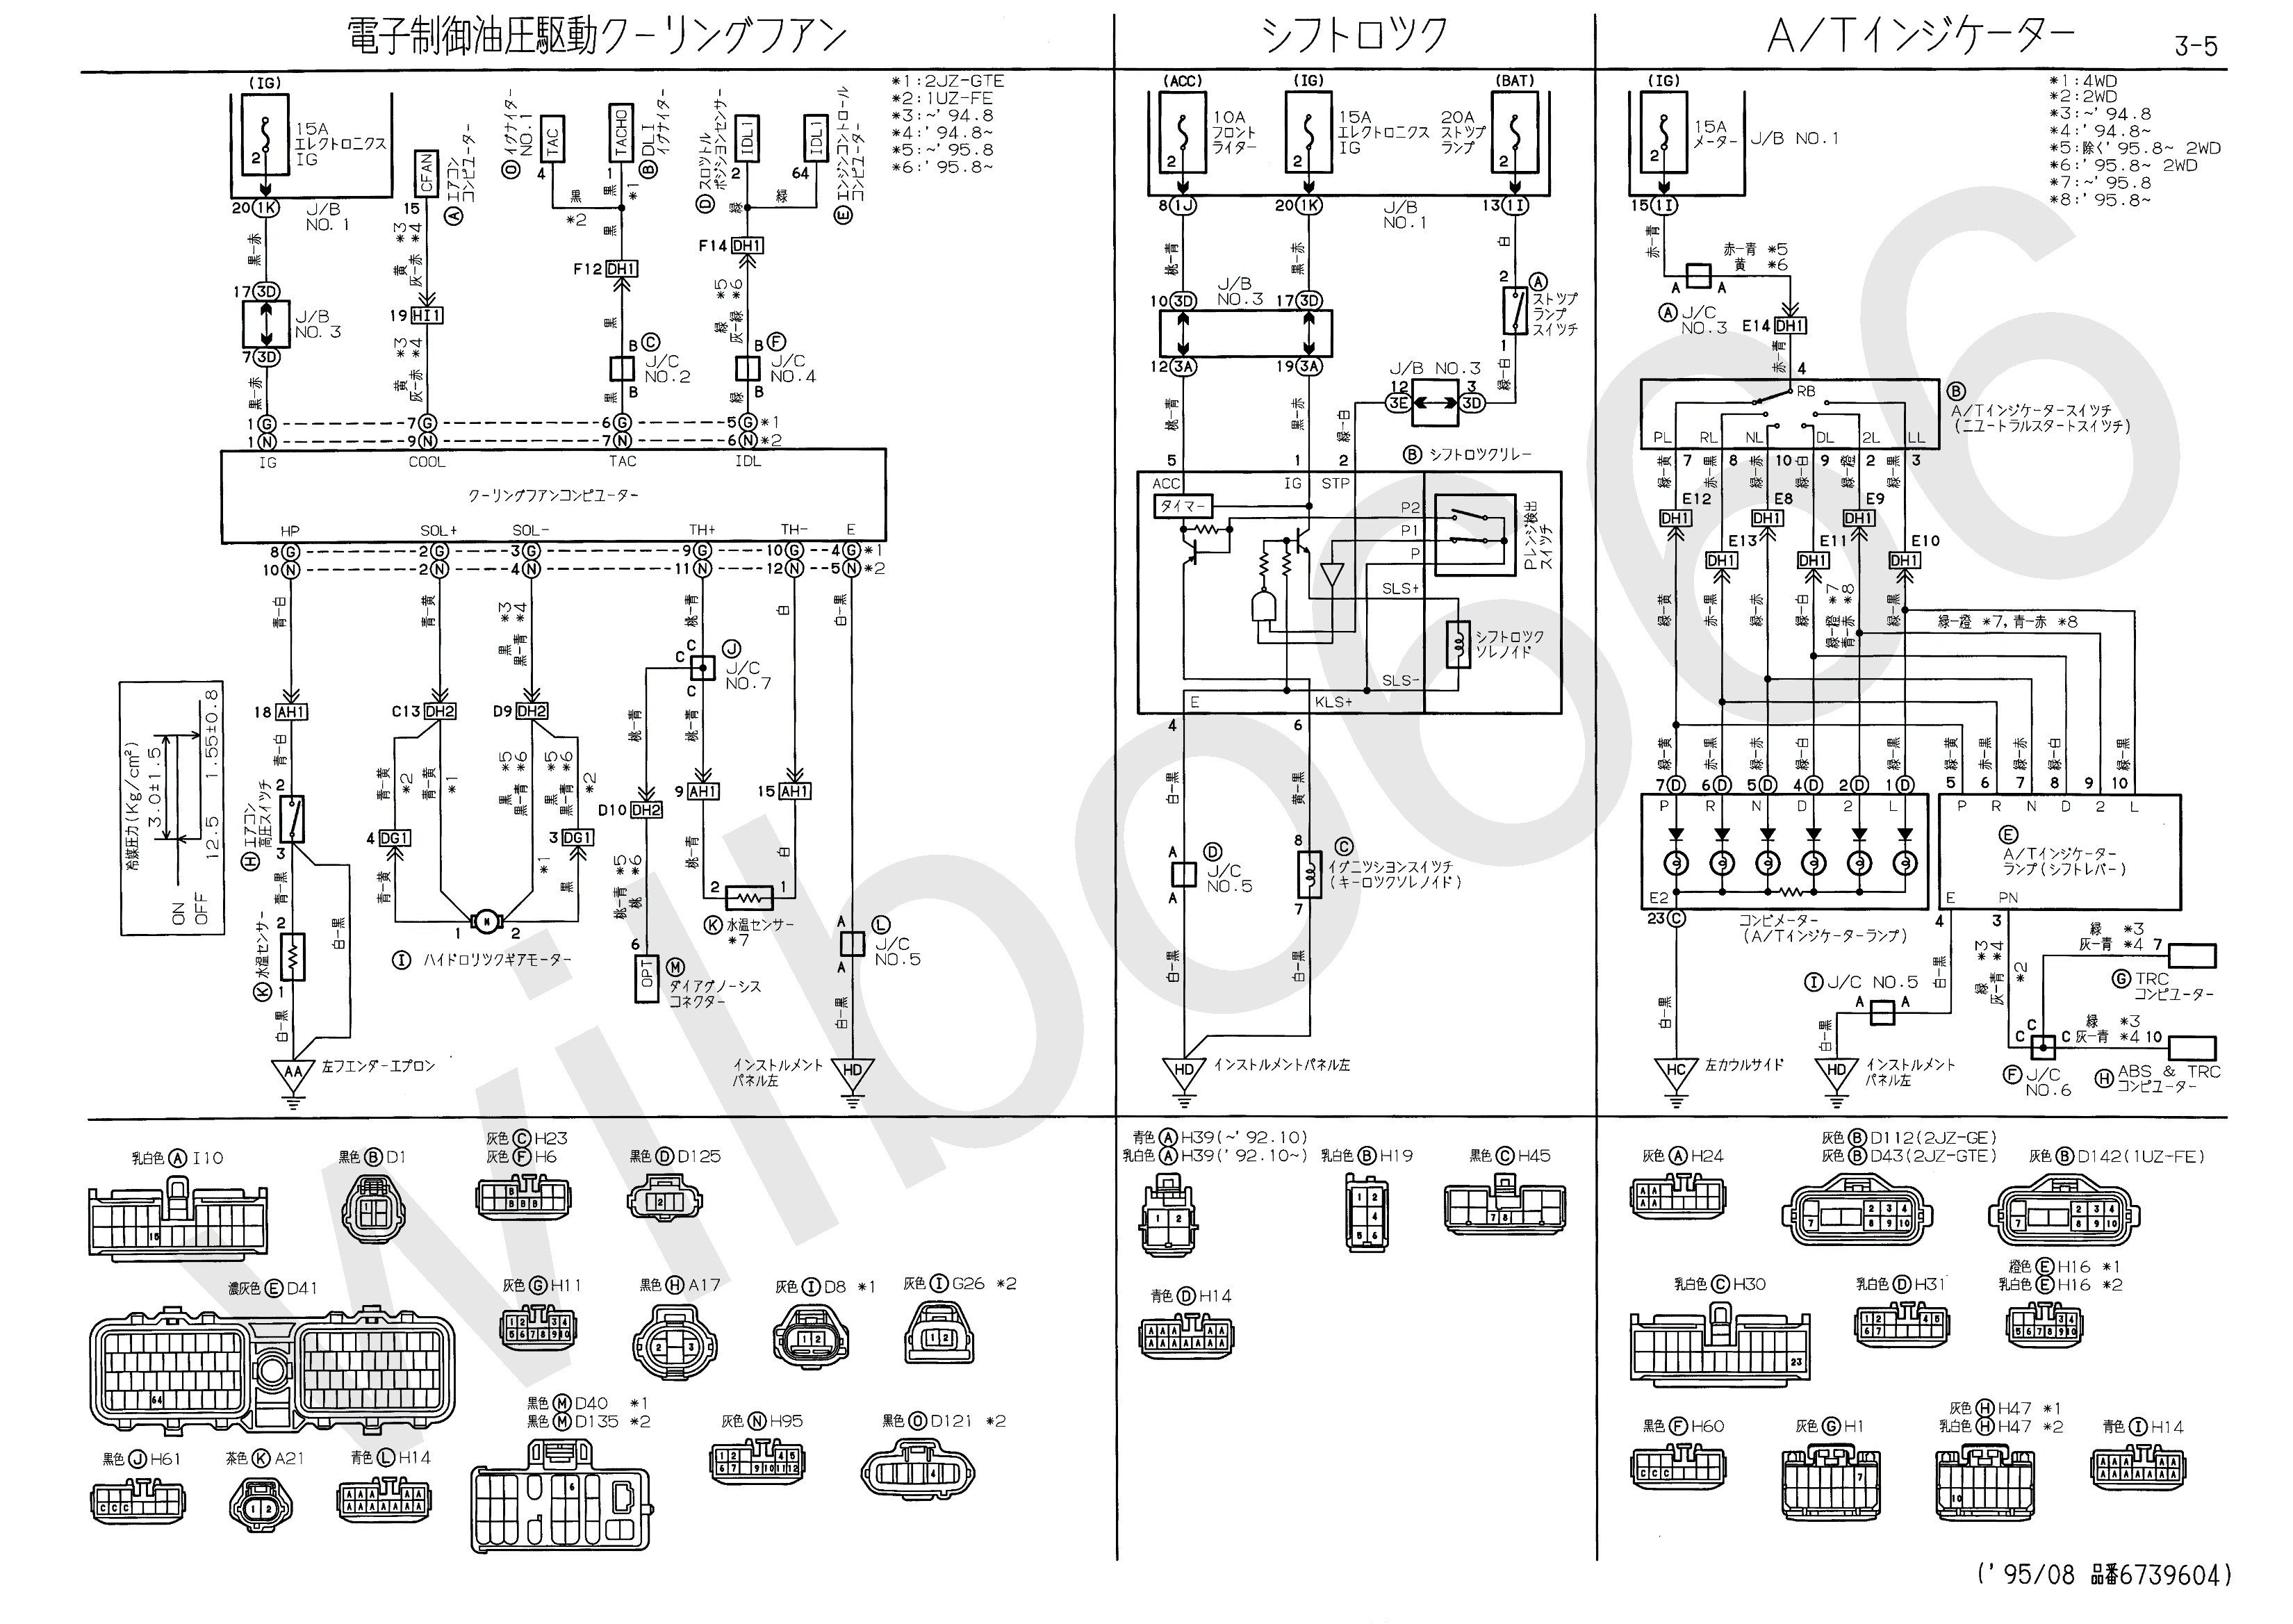 Data Link Connector Wiring Diagram Best Wilbo666 2jz Gte Jzs147 Aristo Engine Wiring